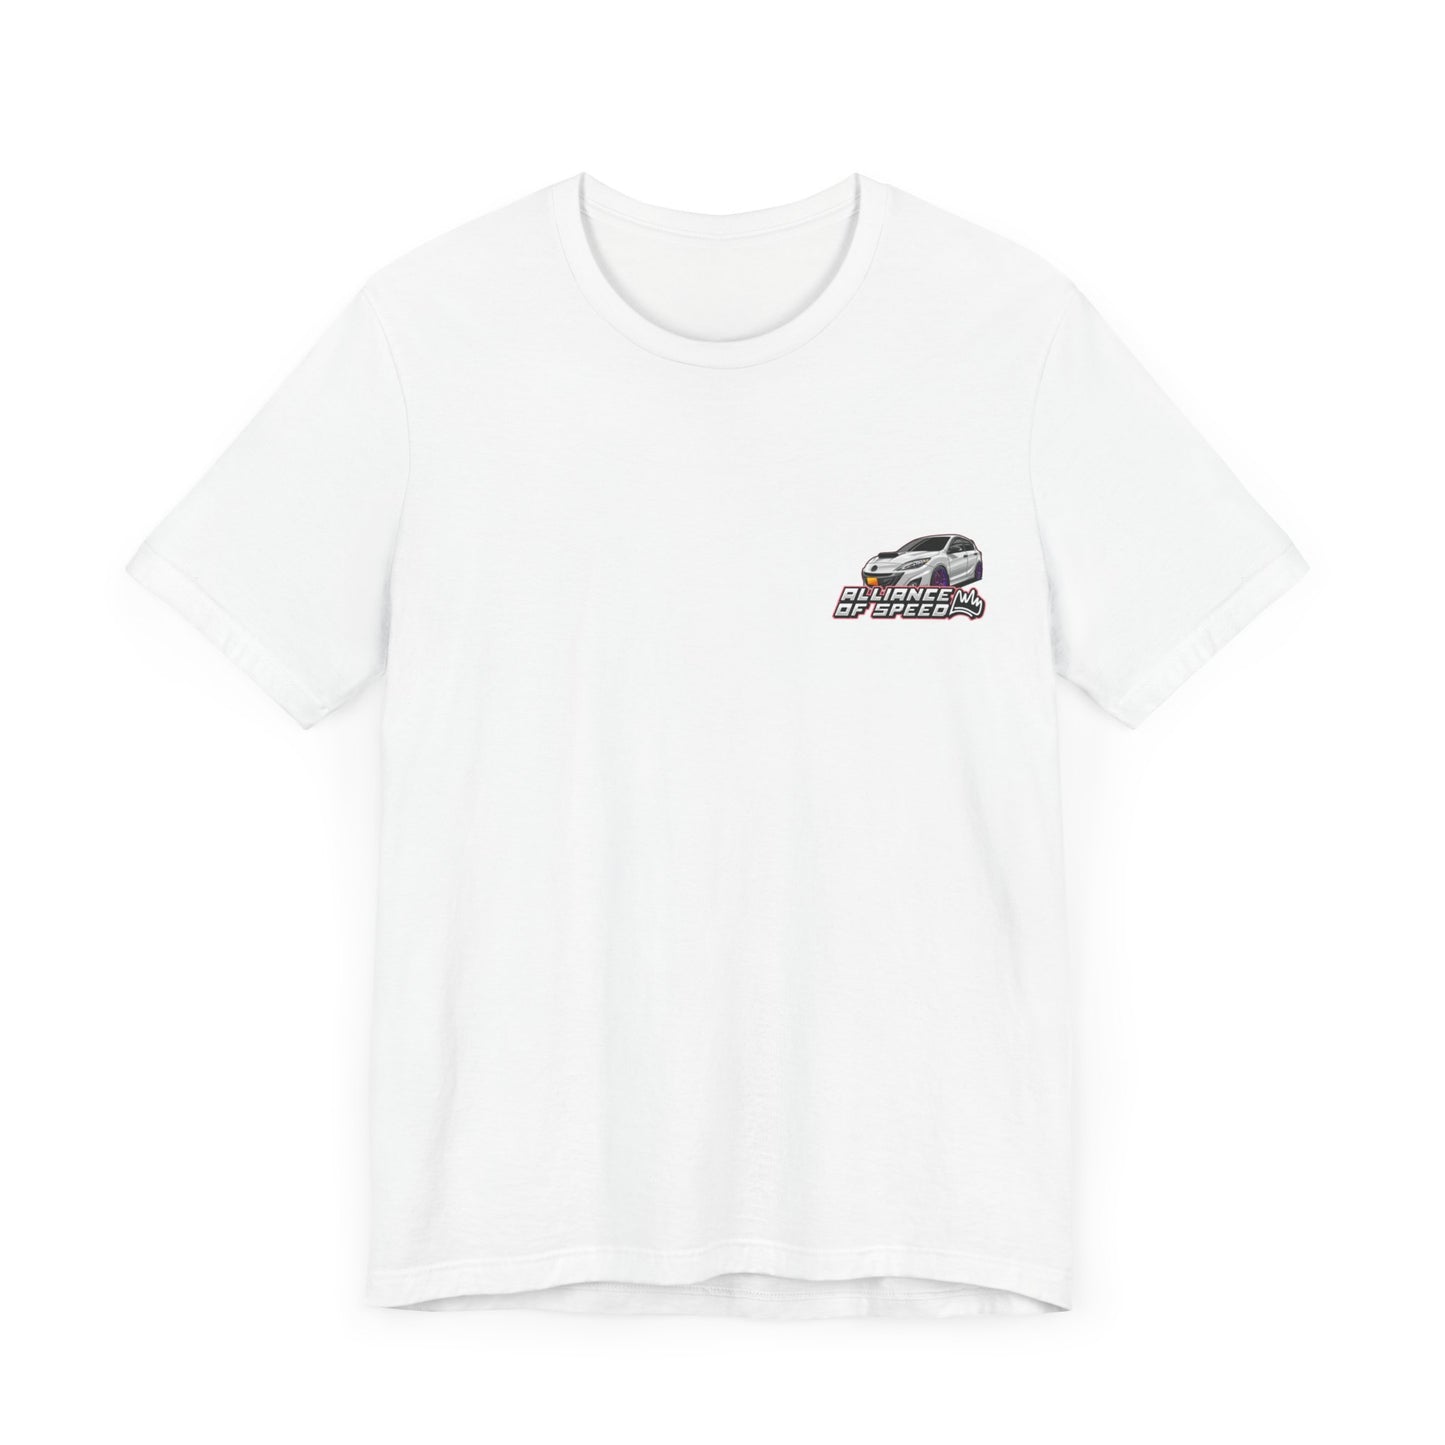 AOS Mazda Speed 3 T-Shirt